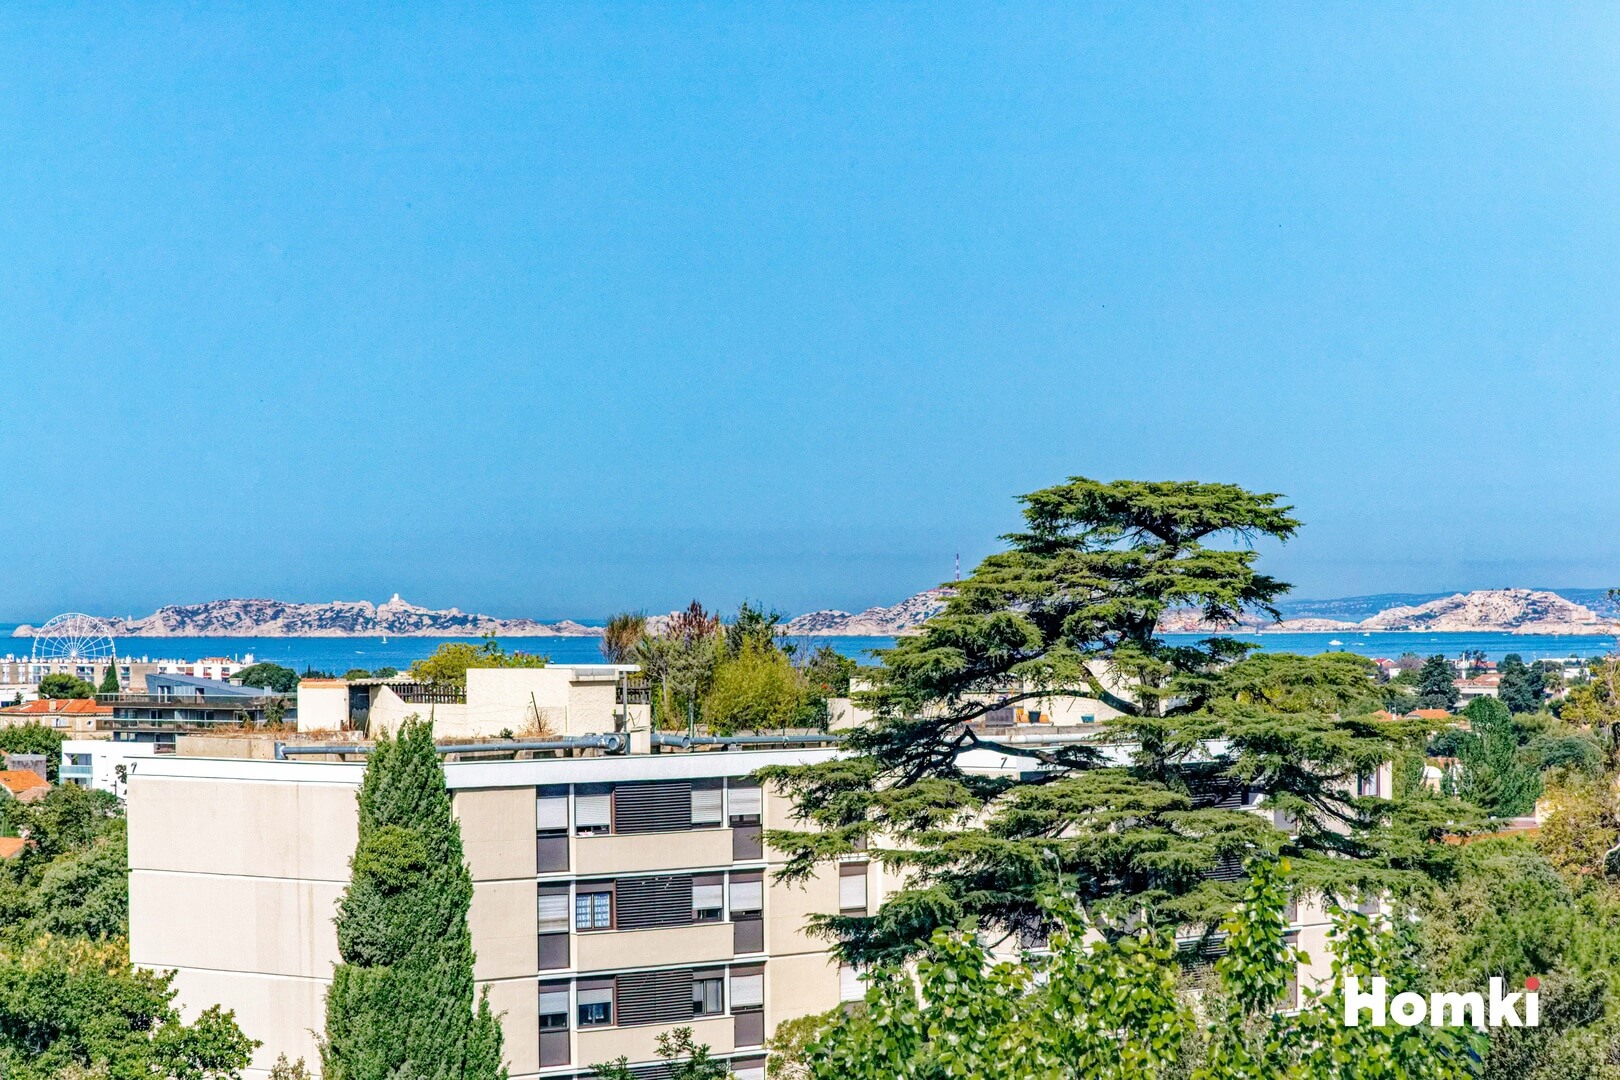 Homki - Vente Appartement  de 103.79 m² à Marseille 13009